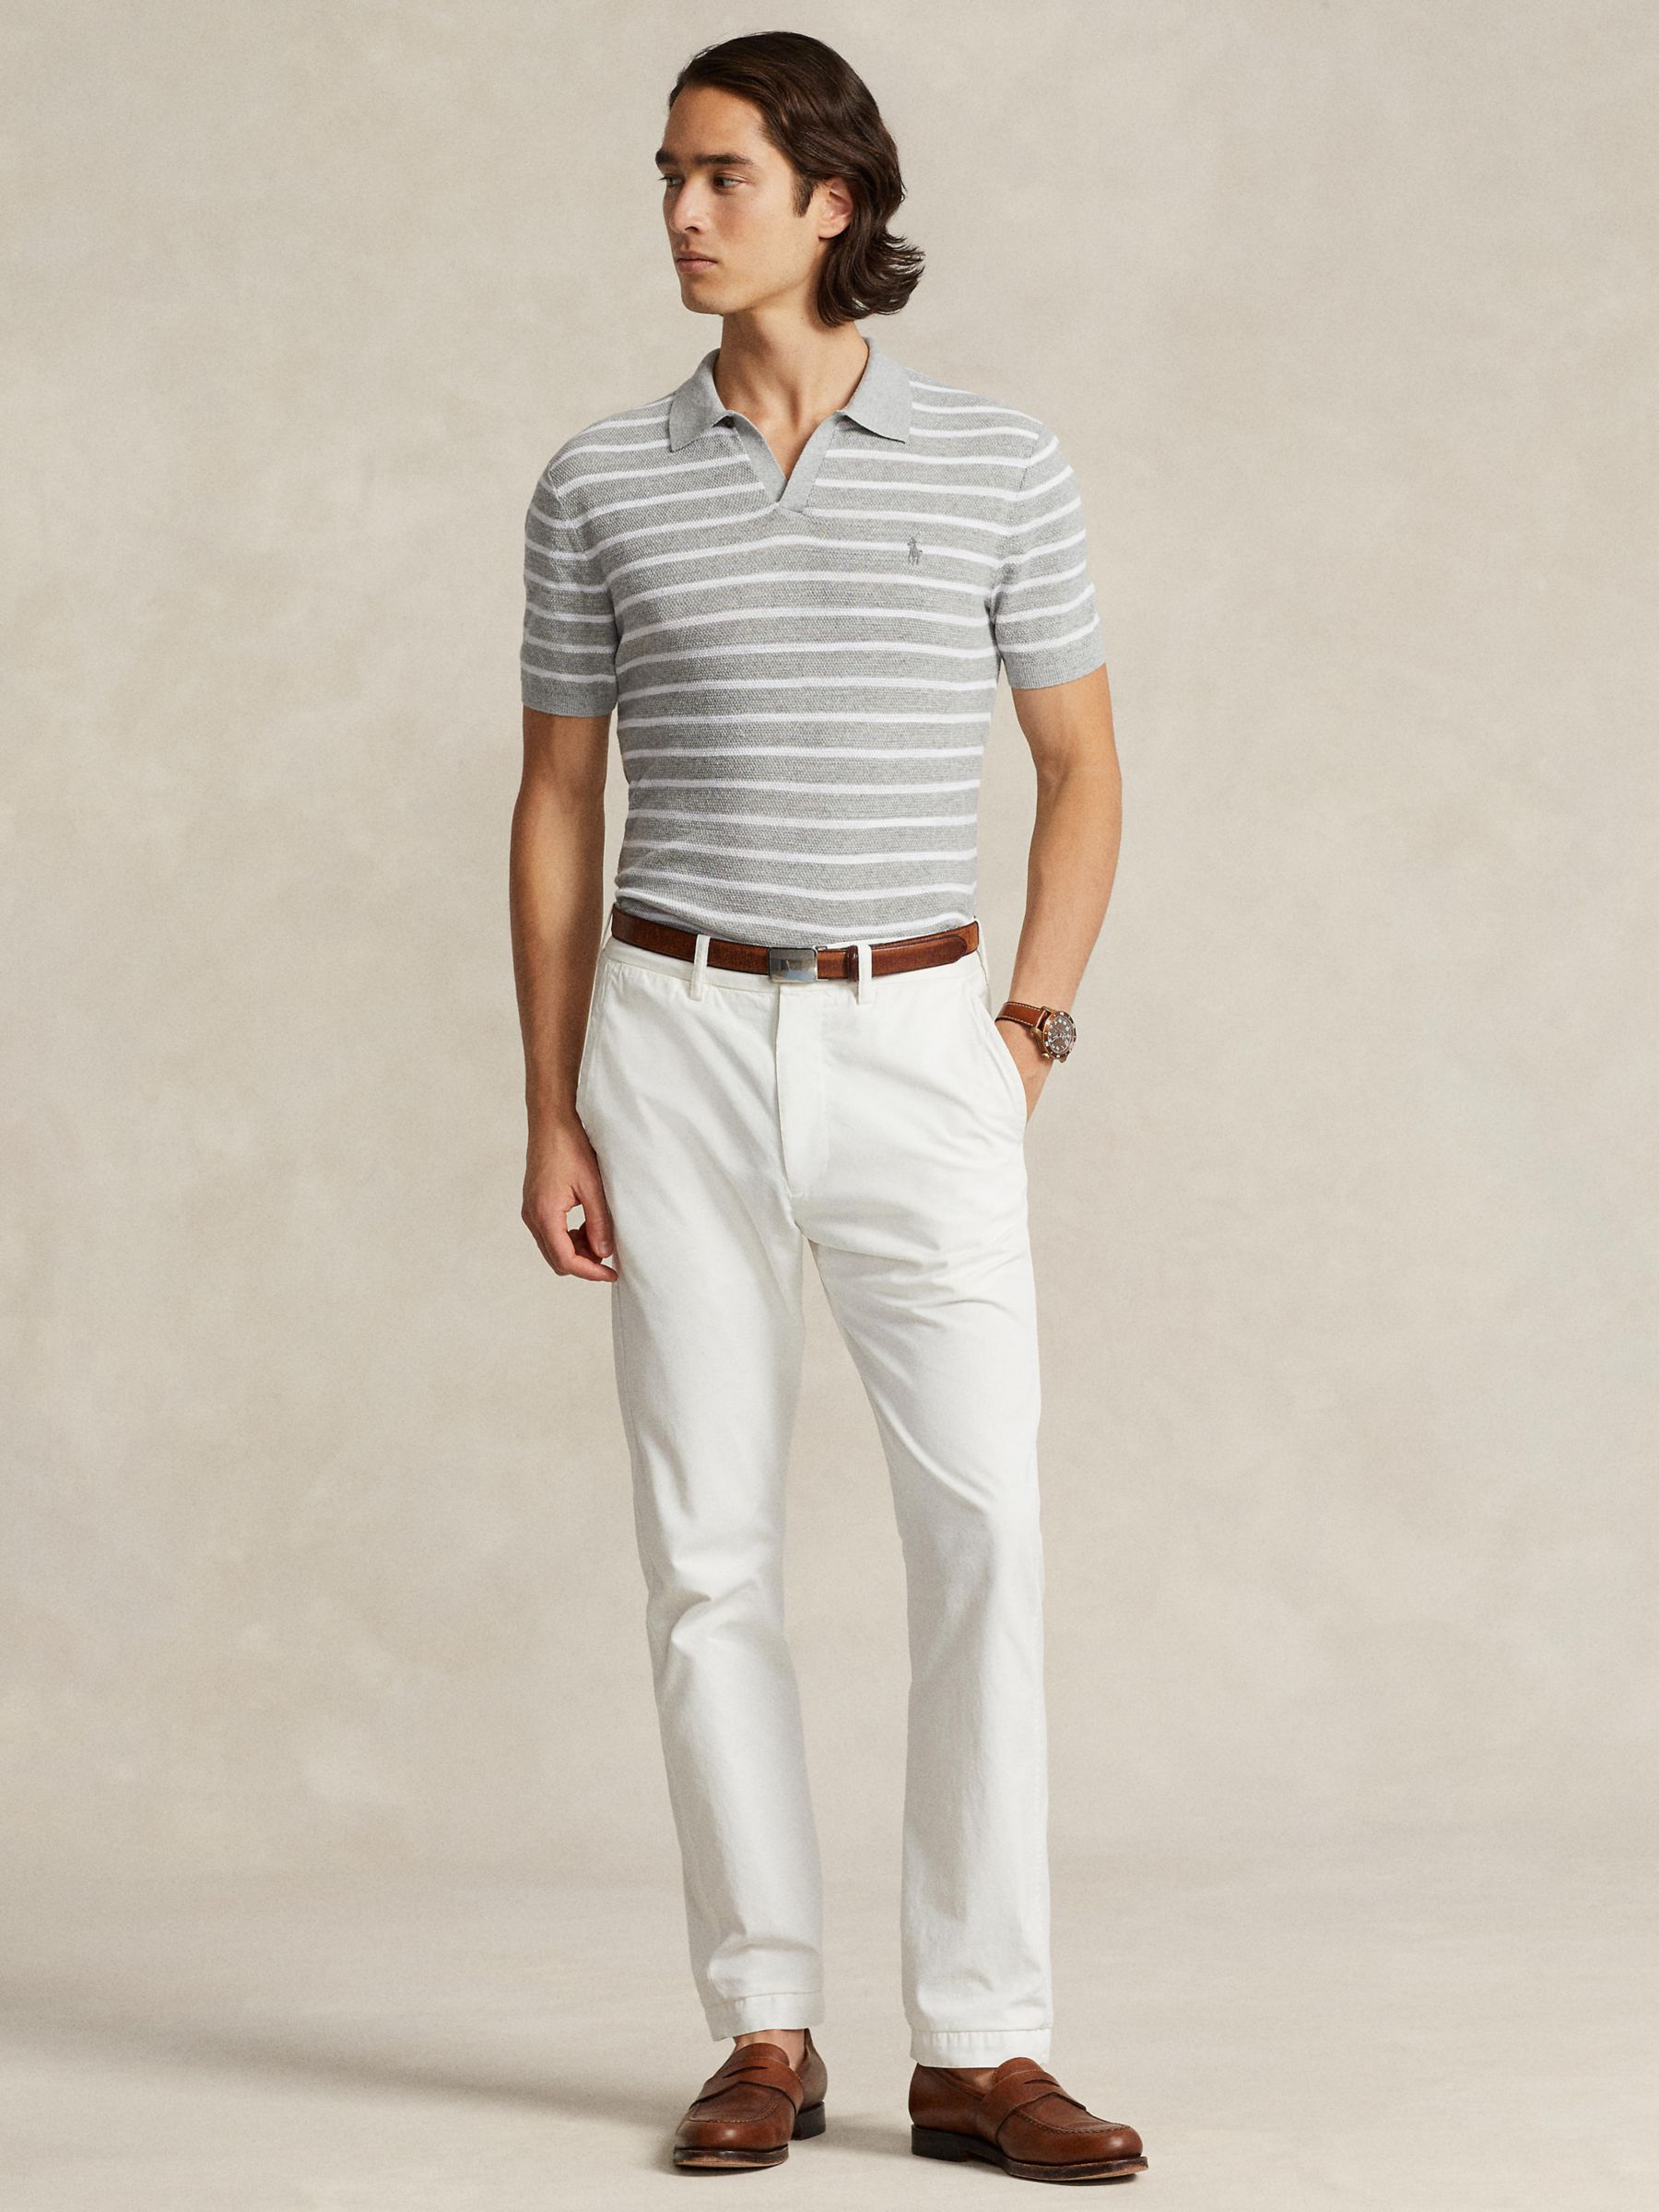 Ralph Lauren Striped Linen Blend Polo Shirt, Grey, S